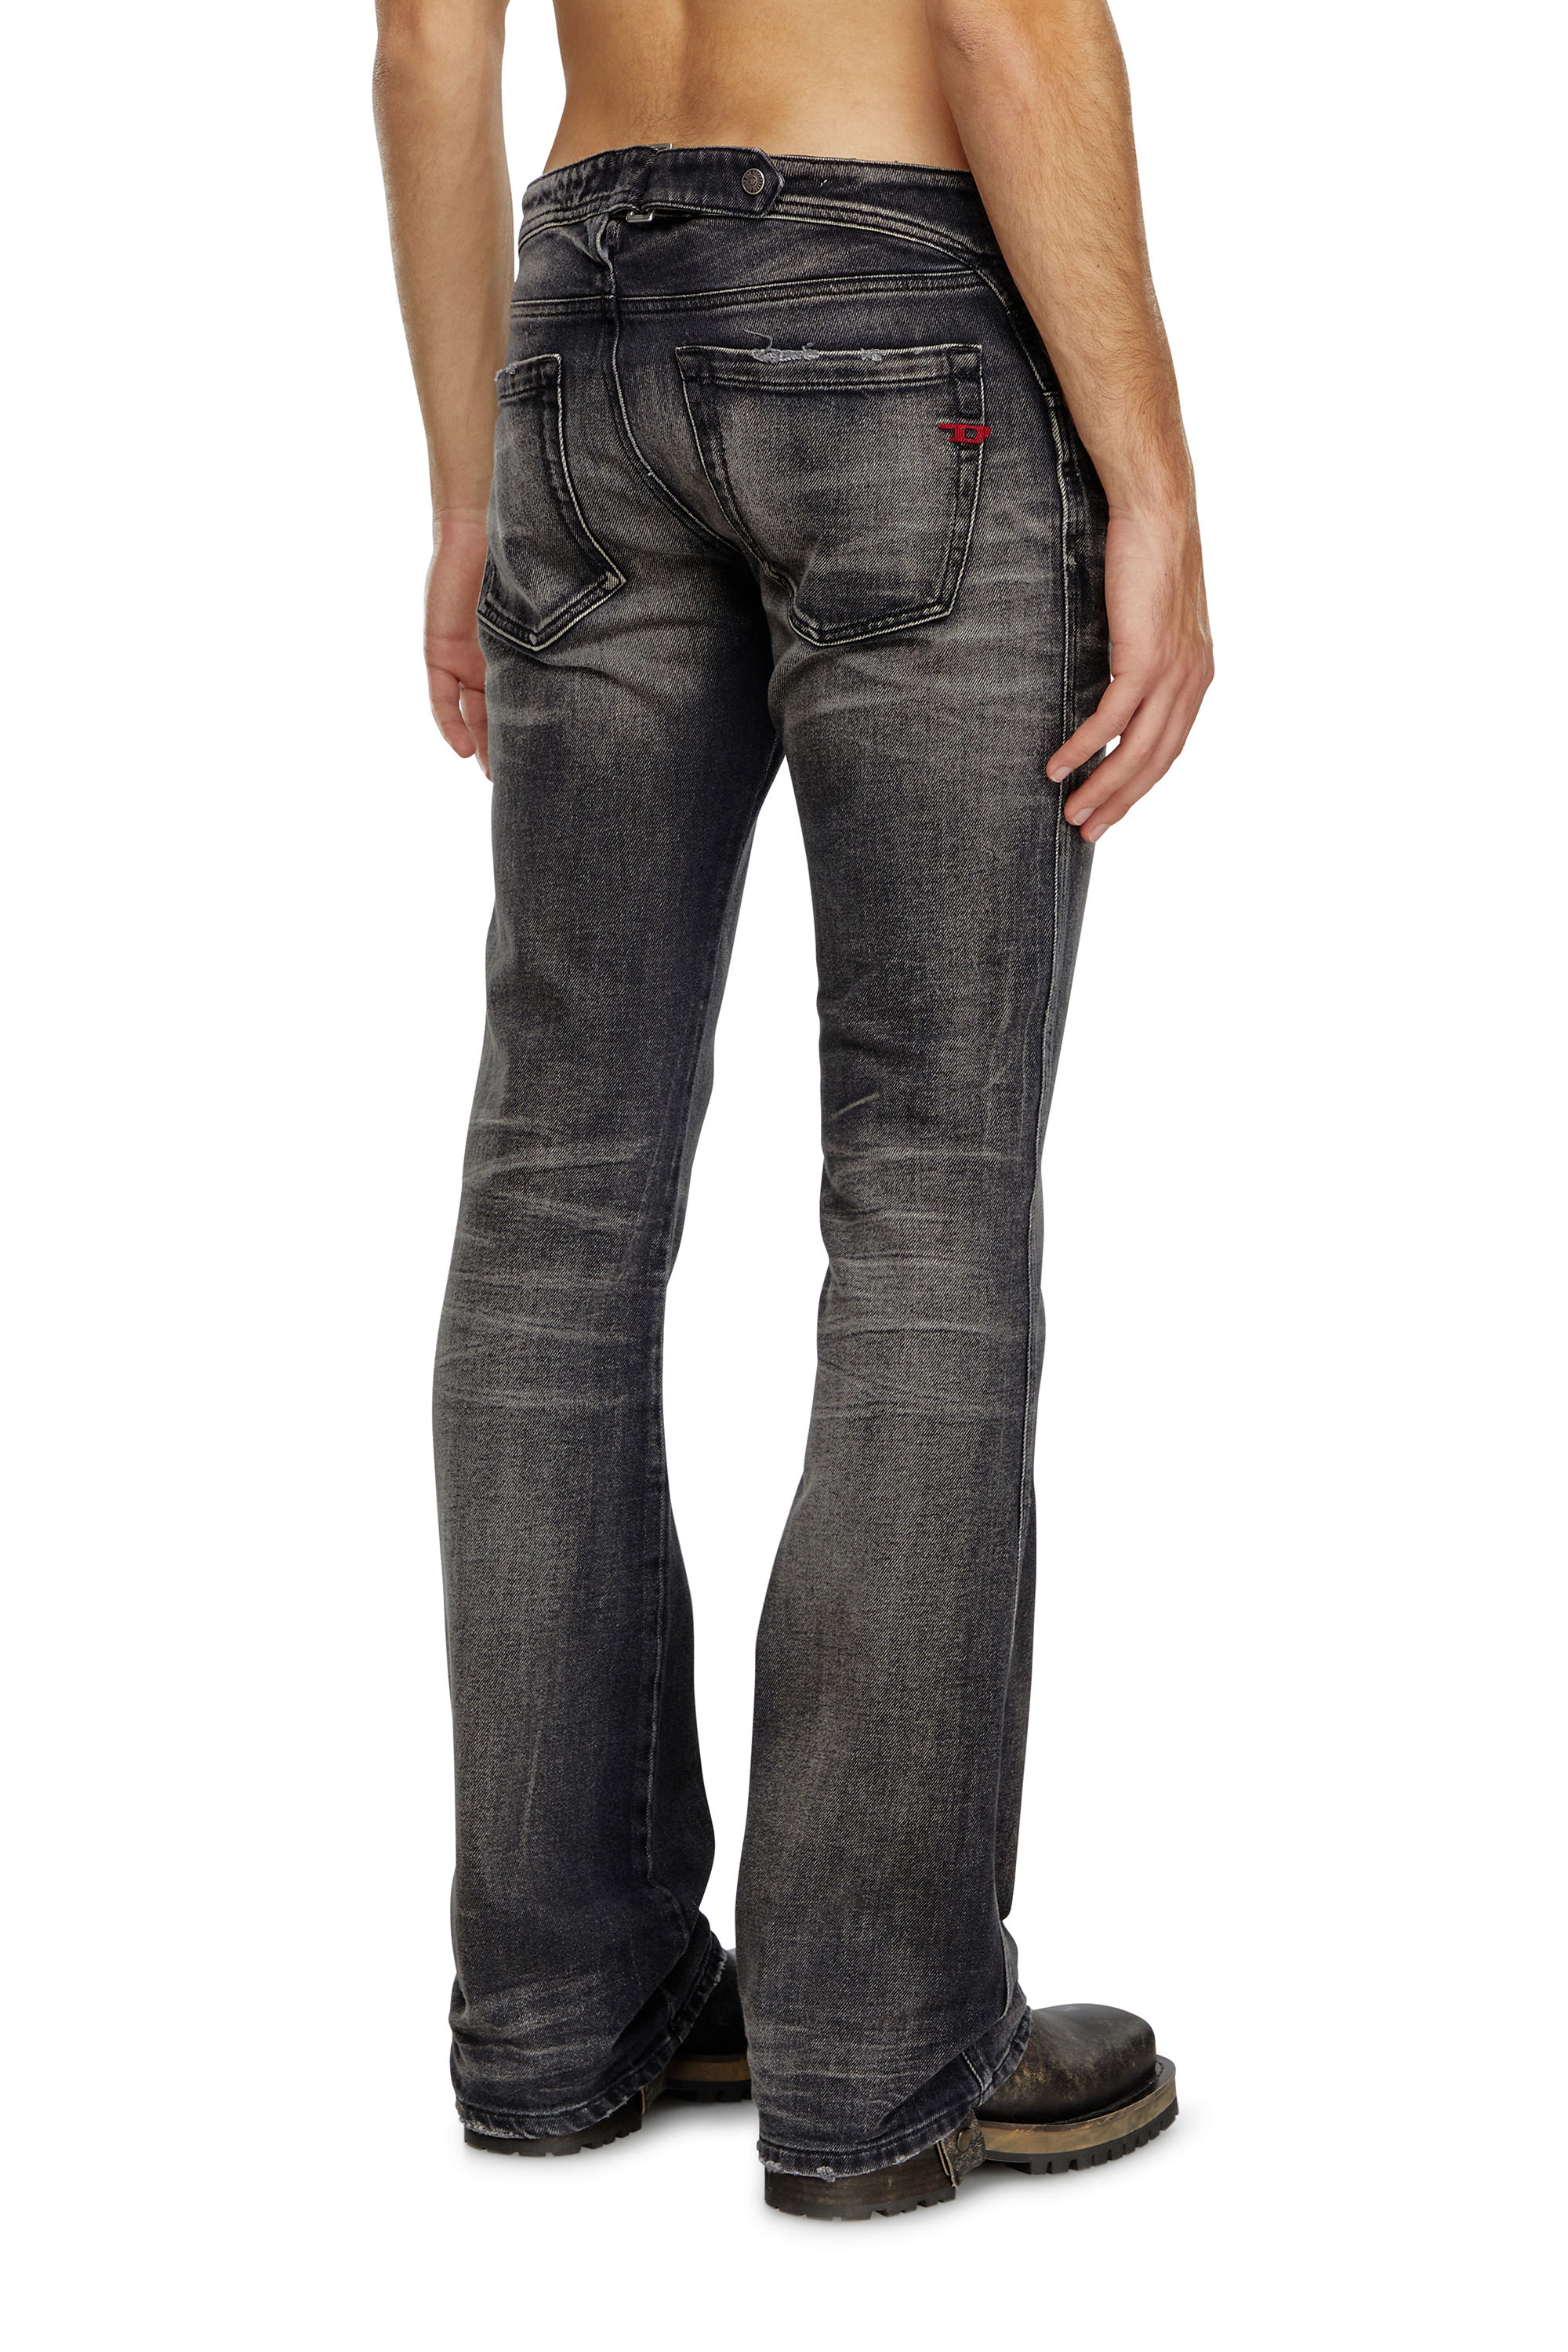 Diesel - Bootcut Jeans D-Backler 09J65, Hombre Bootcut Jeans - D-Backler in Negro - Image 3